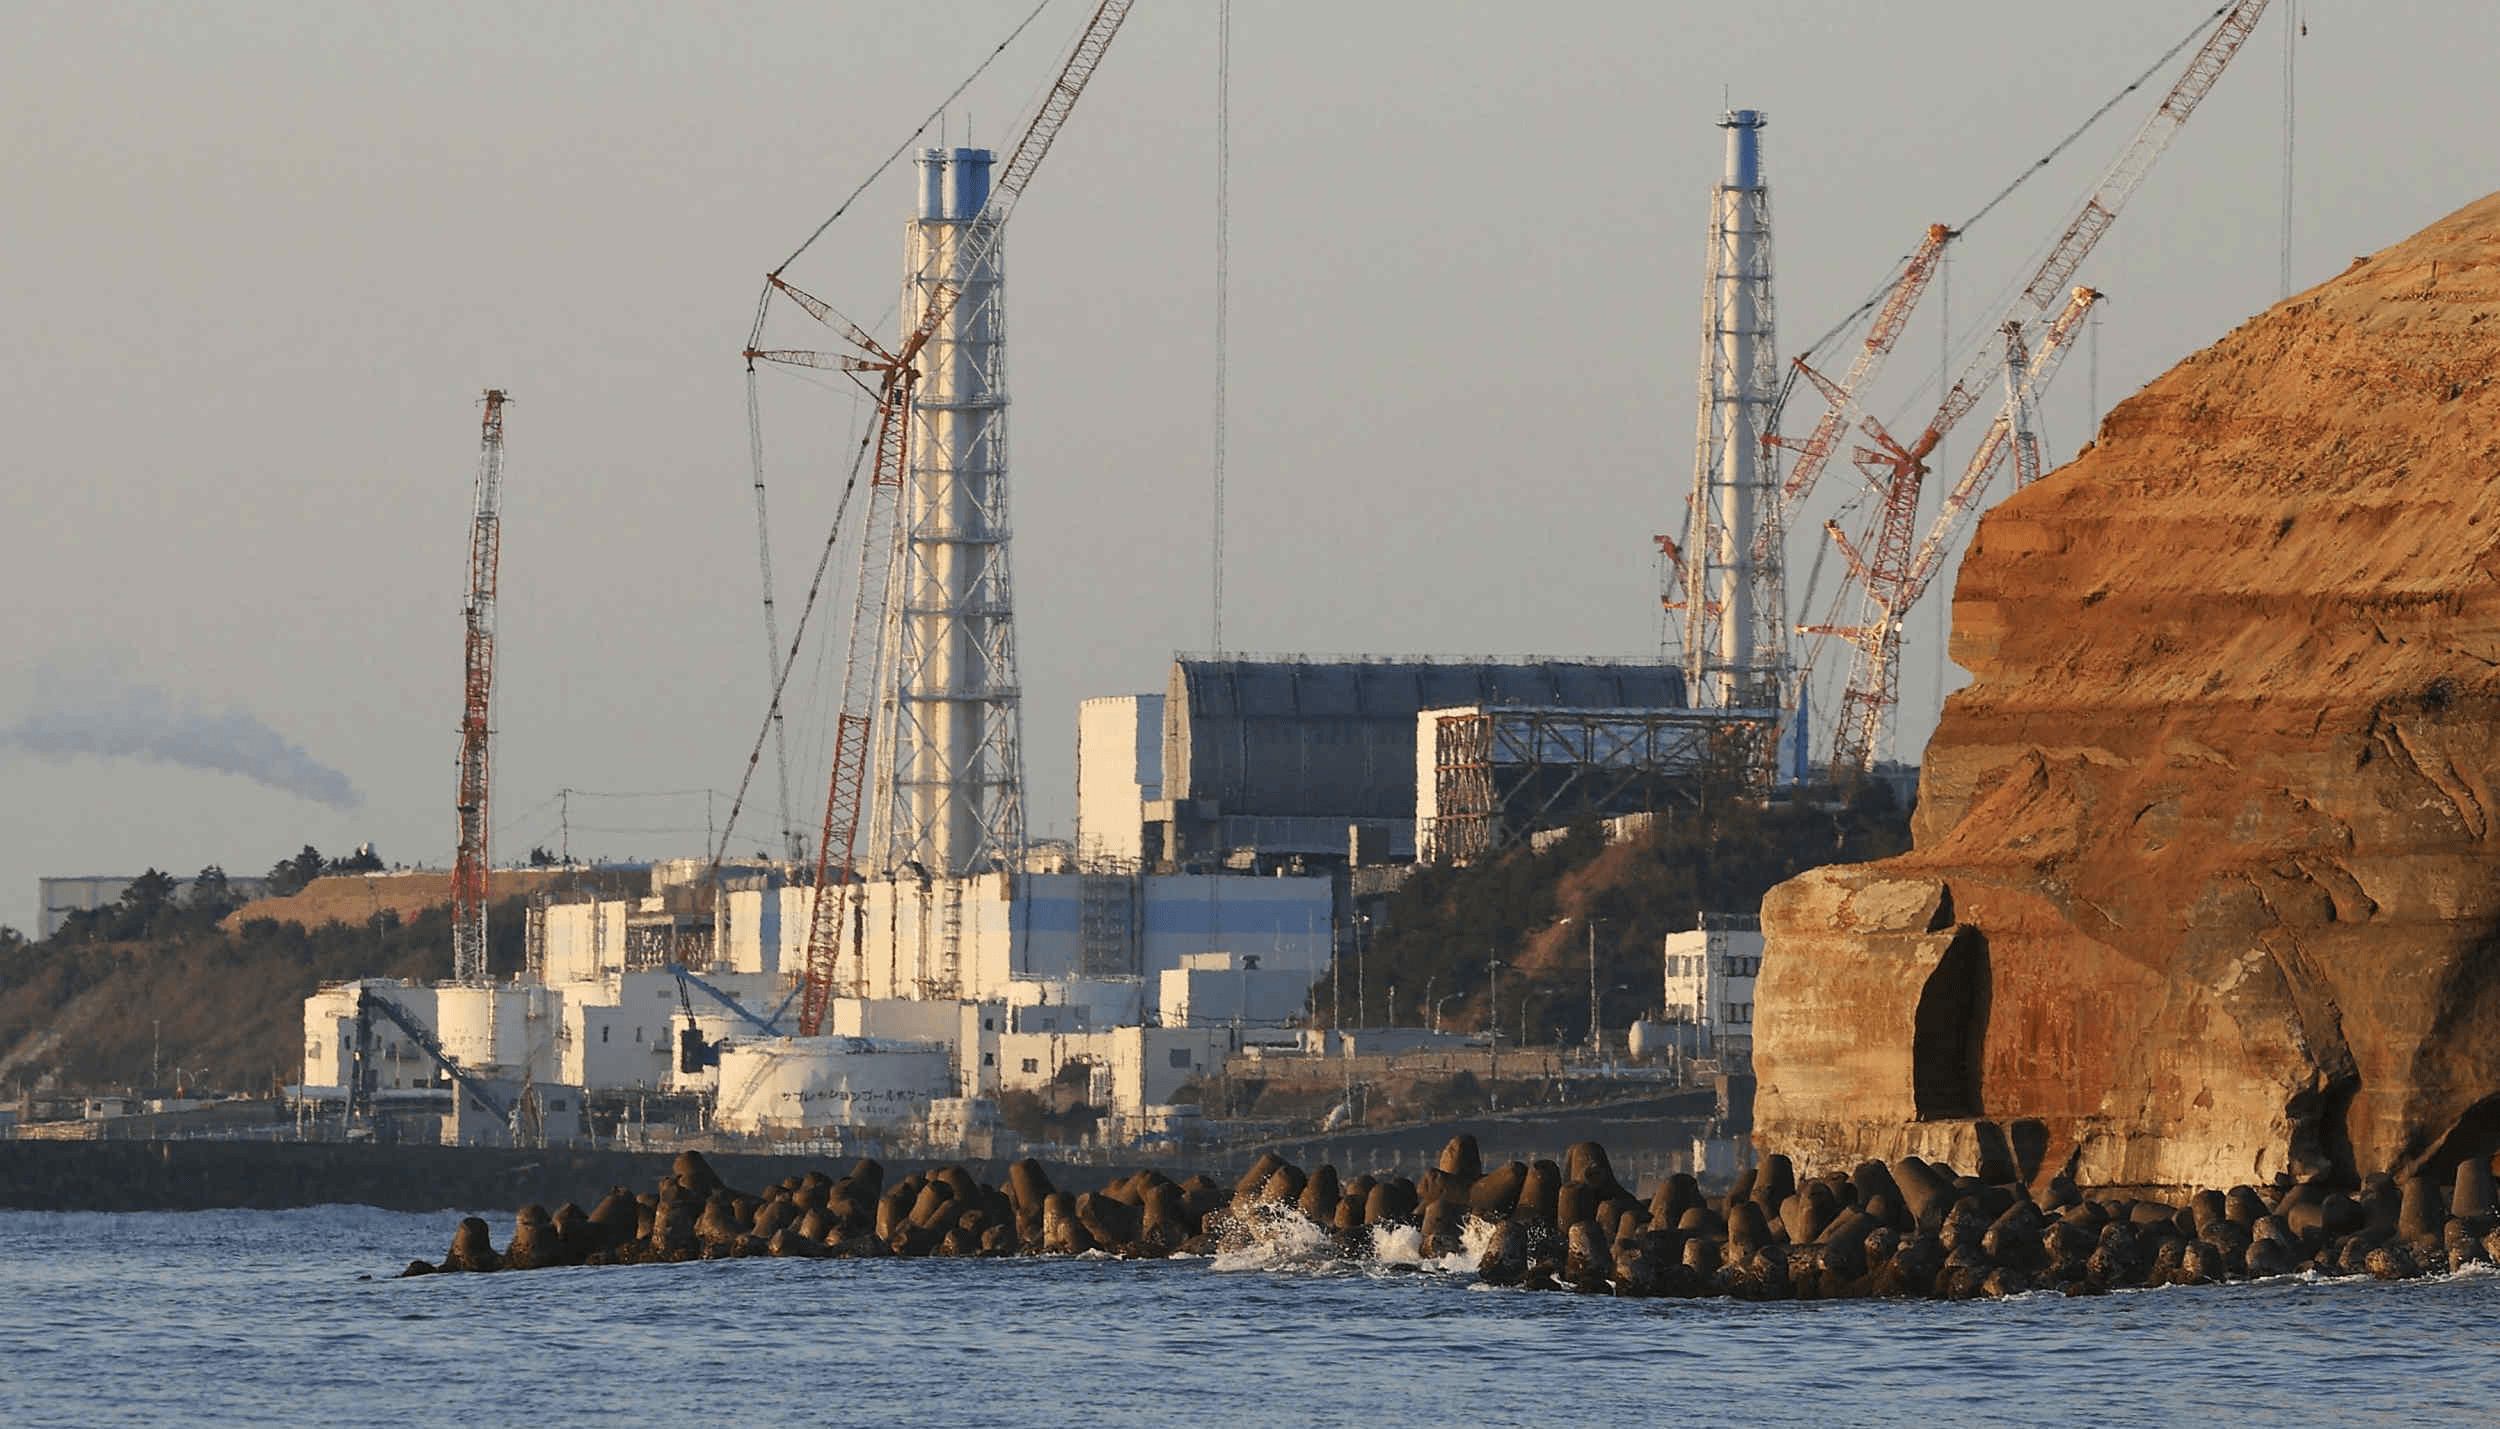 日本福岛县知事就福岛核污水排放入海决策表示,首相应负起责任